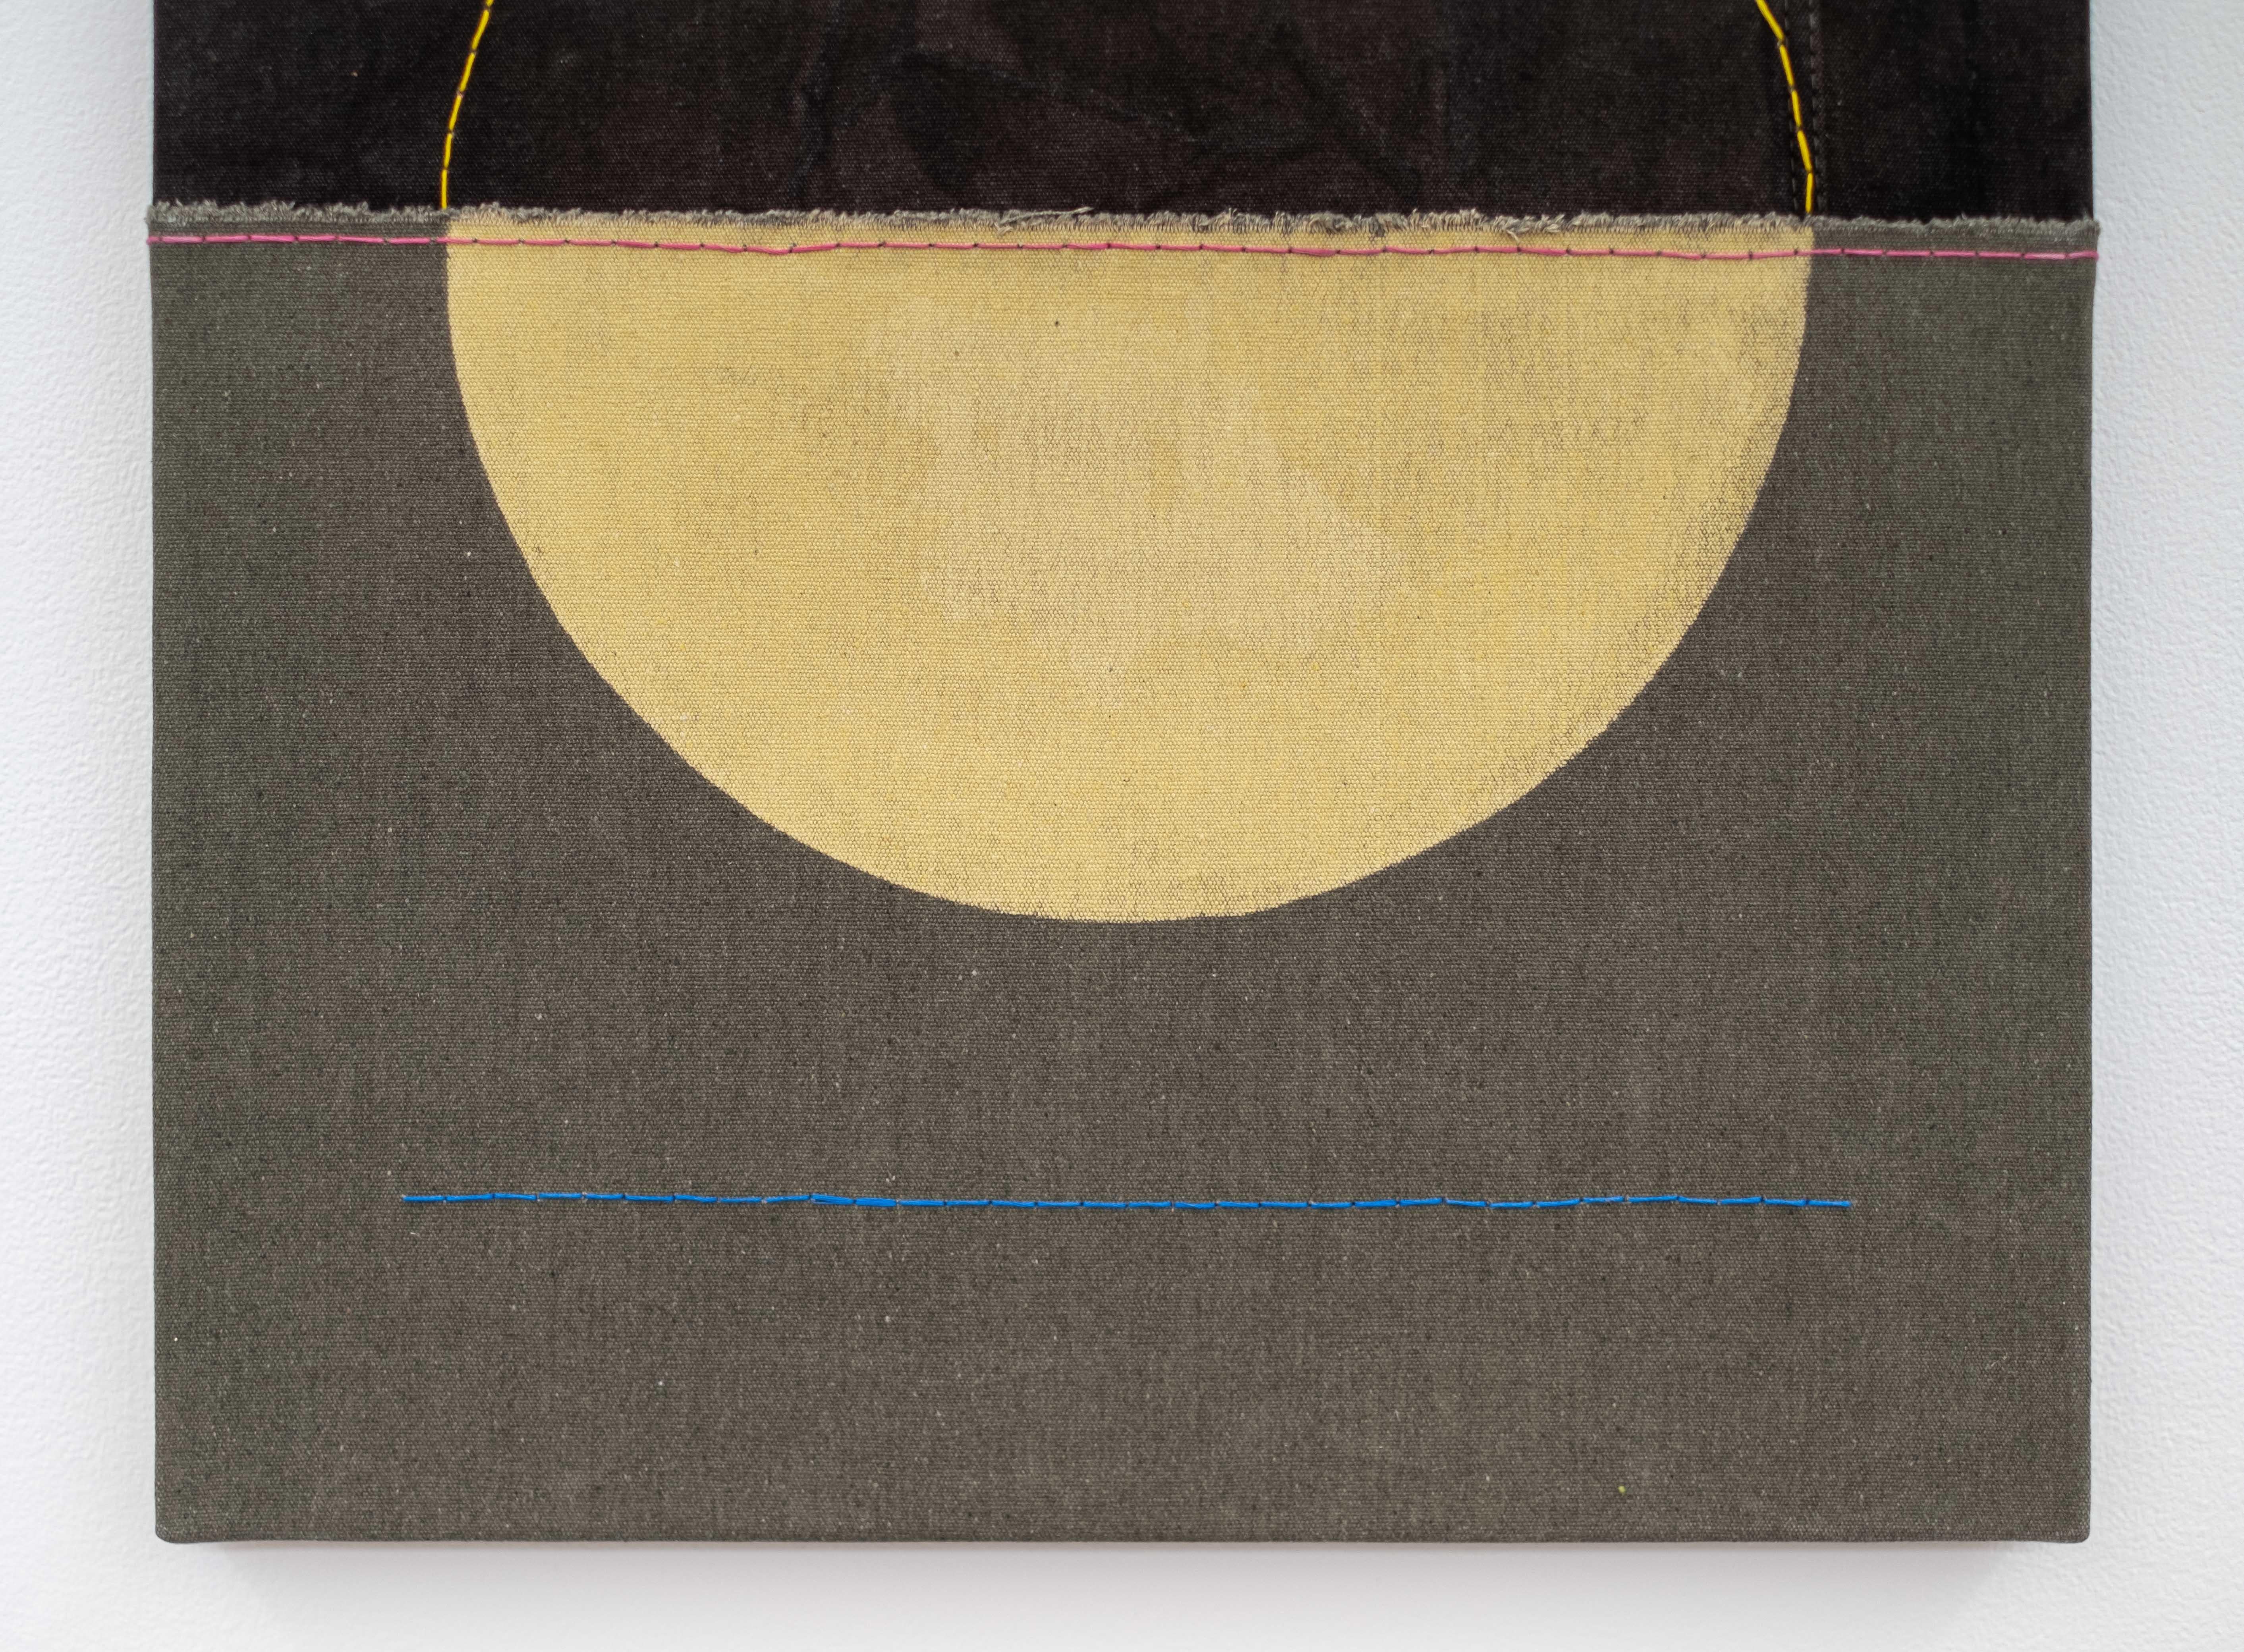 Der kanadische Künstler Aron Hill ist für seine einzigartige minimalistische Form und seinen intuitiven Sinn für Farben bekannt. Ihre Landschaften enthalten oft bekannte Themen wie Sonne, Mond und leere Räume, die an eine Prärie erinnern. In dieser